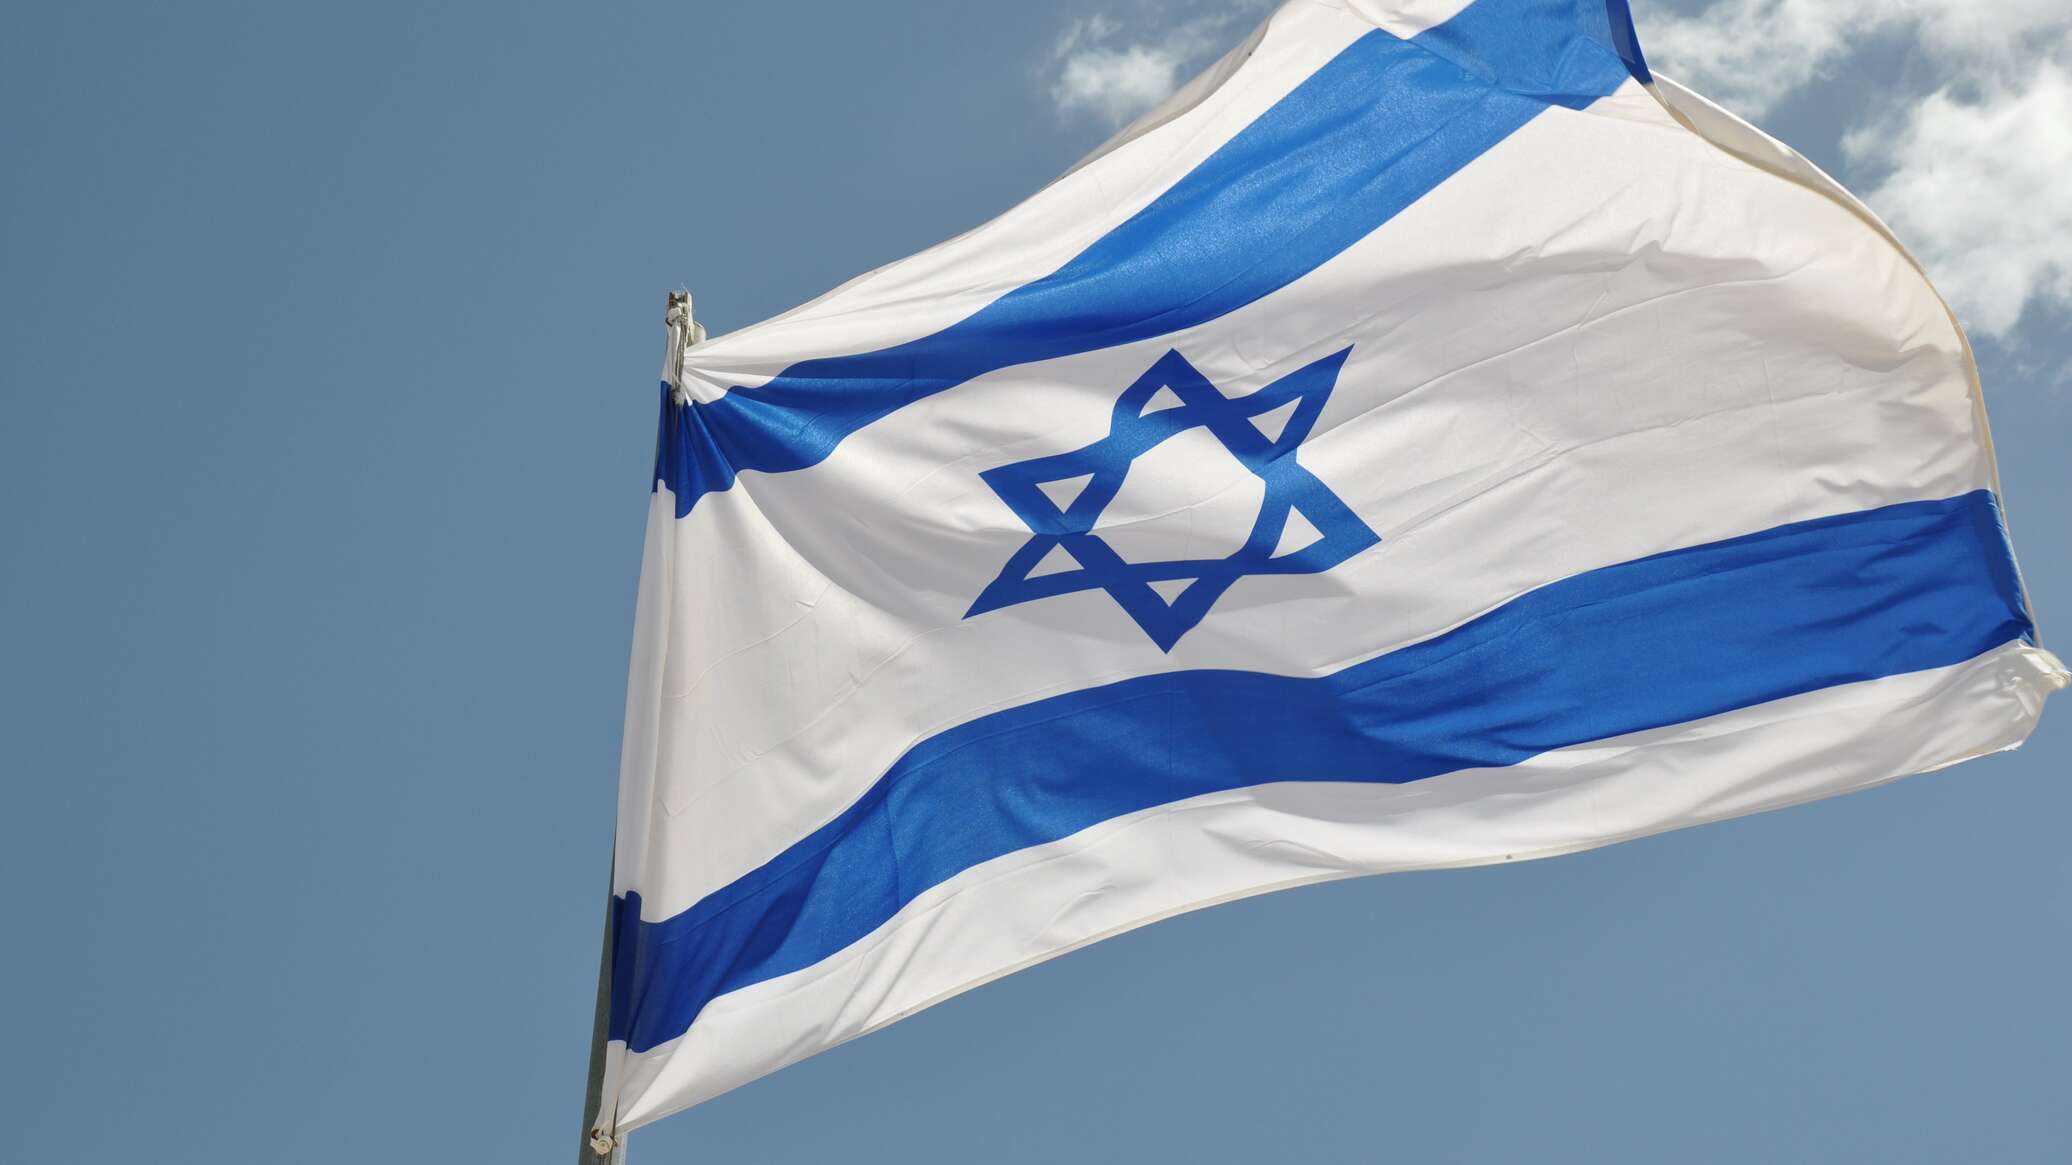 رئيس سابق للموساد بشأن الهجوم المنسوب لإسرائيل على إيران: الأمر لم ينته بعد